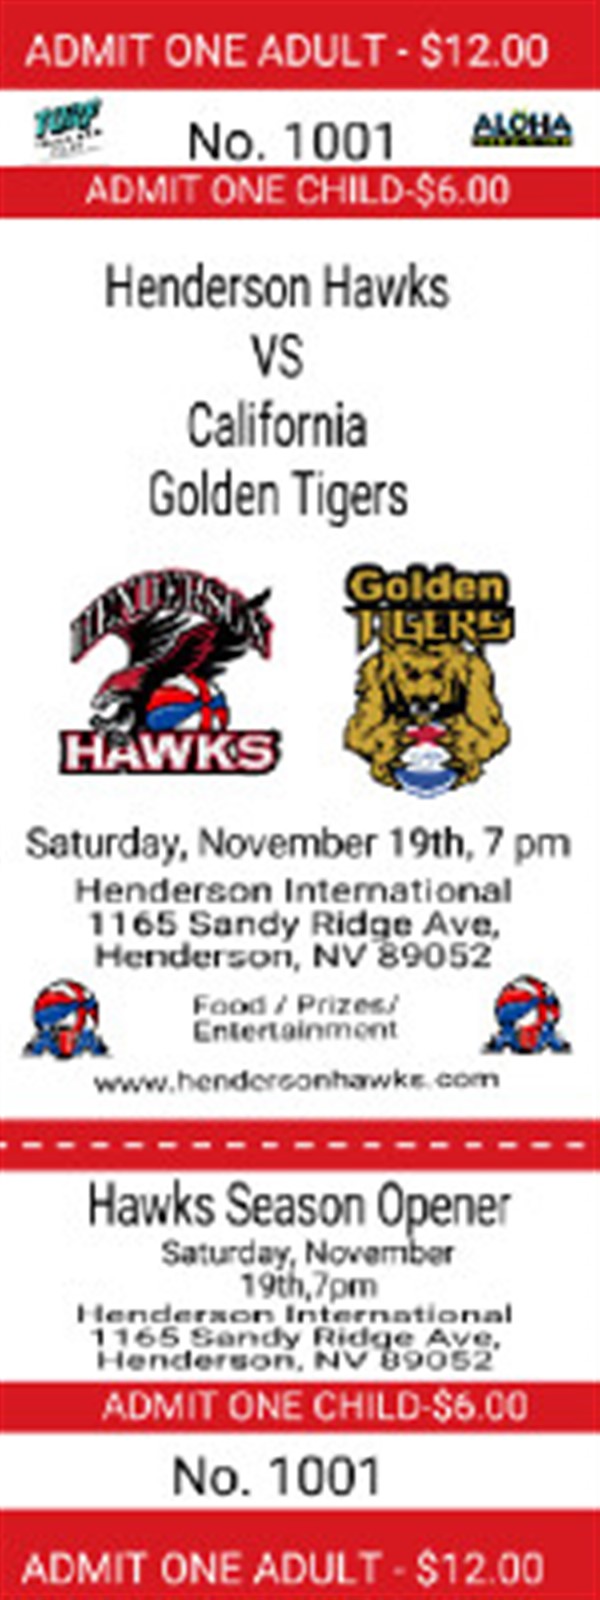 Obtenez des informations et achetez des billets pour Season Opener Henderson Hawks (VS) CA Golden Tigers sur Henderson Hawks